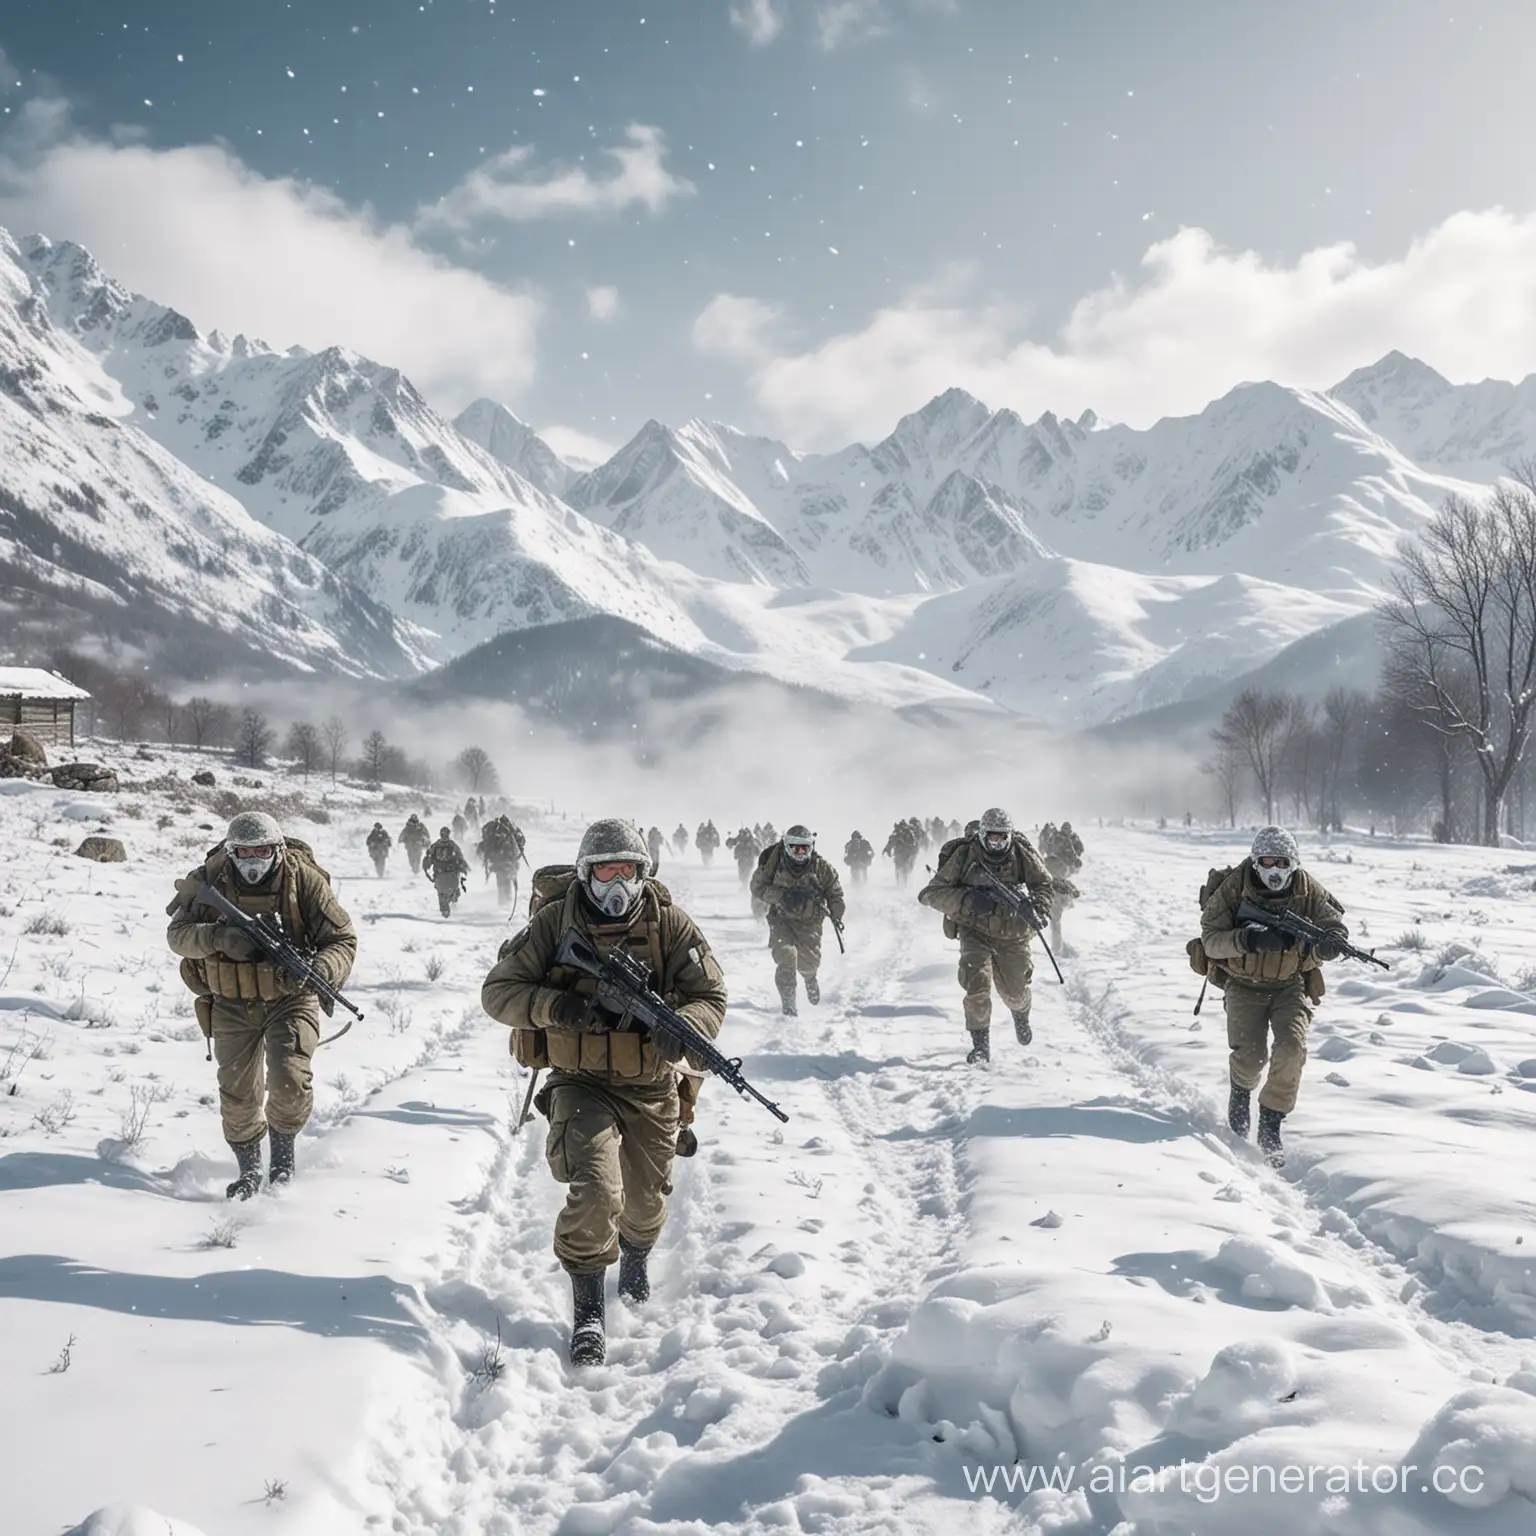  Белая армияидущая вперед по белому снегу. Солдаты одеты в зимнюю военную форму, их лица скрыты масками. На фоне виднеются снежные горы, покрытые пушистым снегом. В руках у солдат виднеются винтовки и метательные гранаты. В воздухе плавают снежинки, создавая впечатление непрекращающегося снегопада.